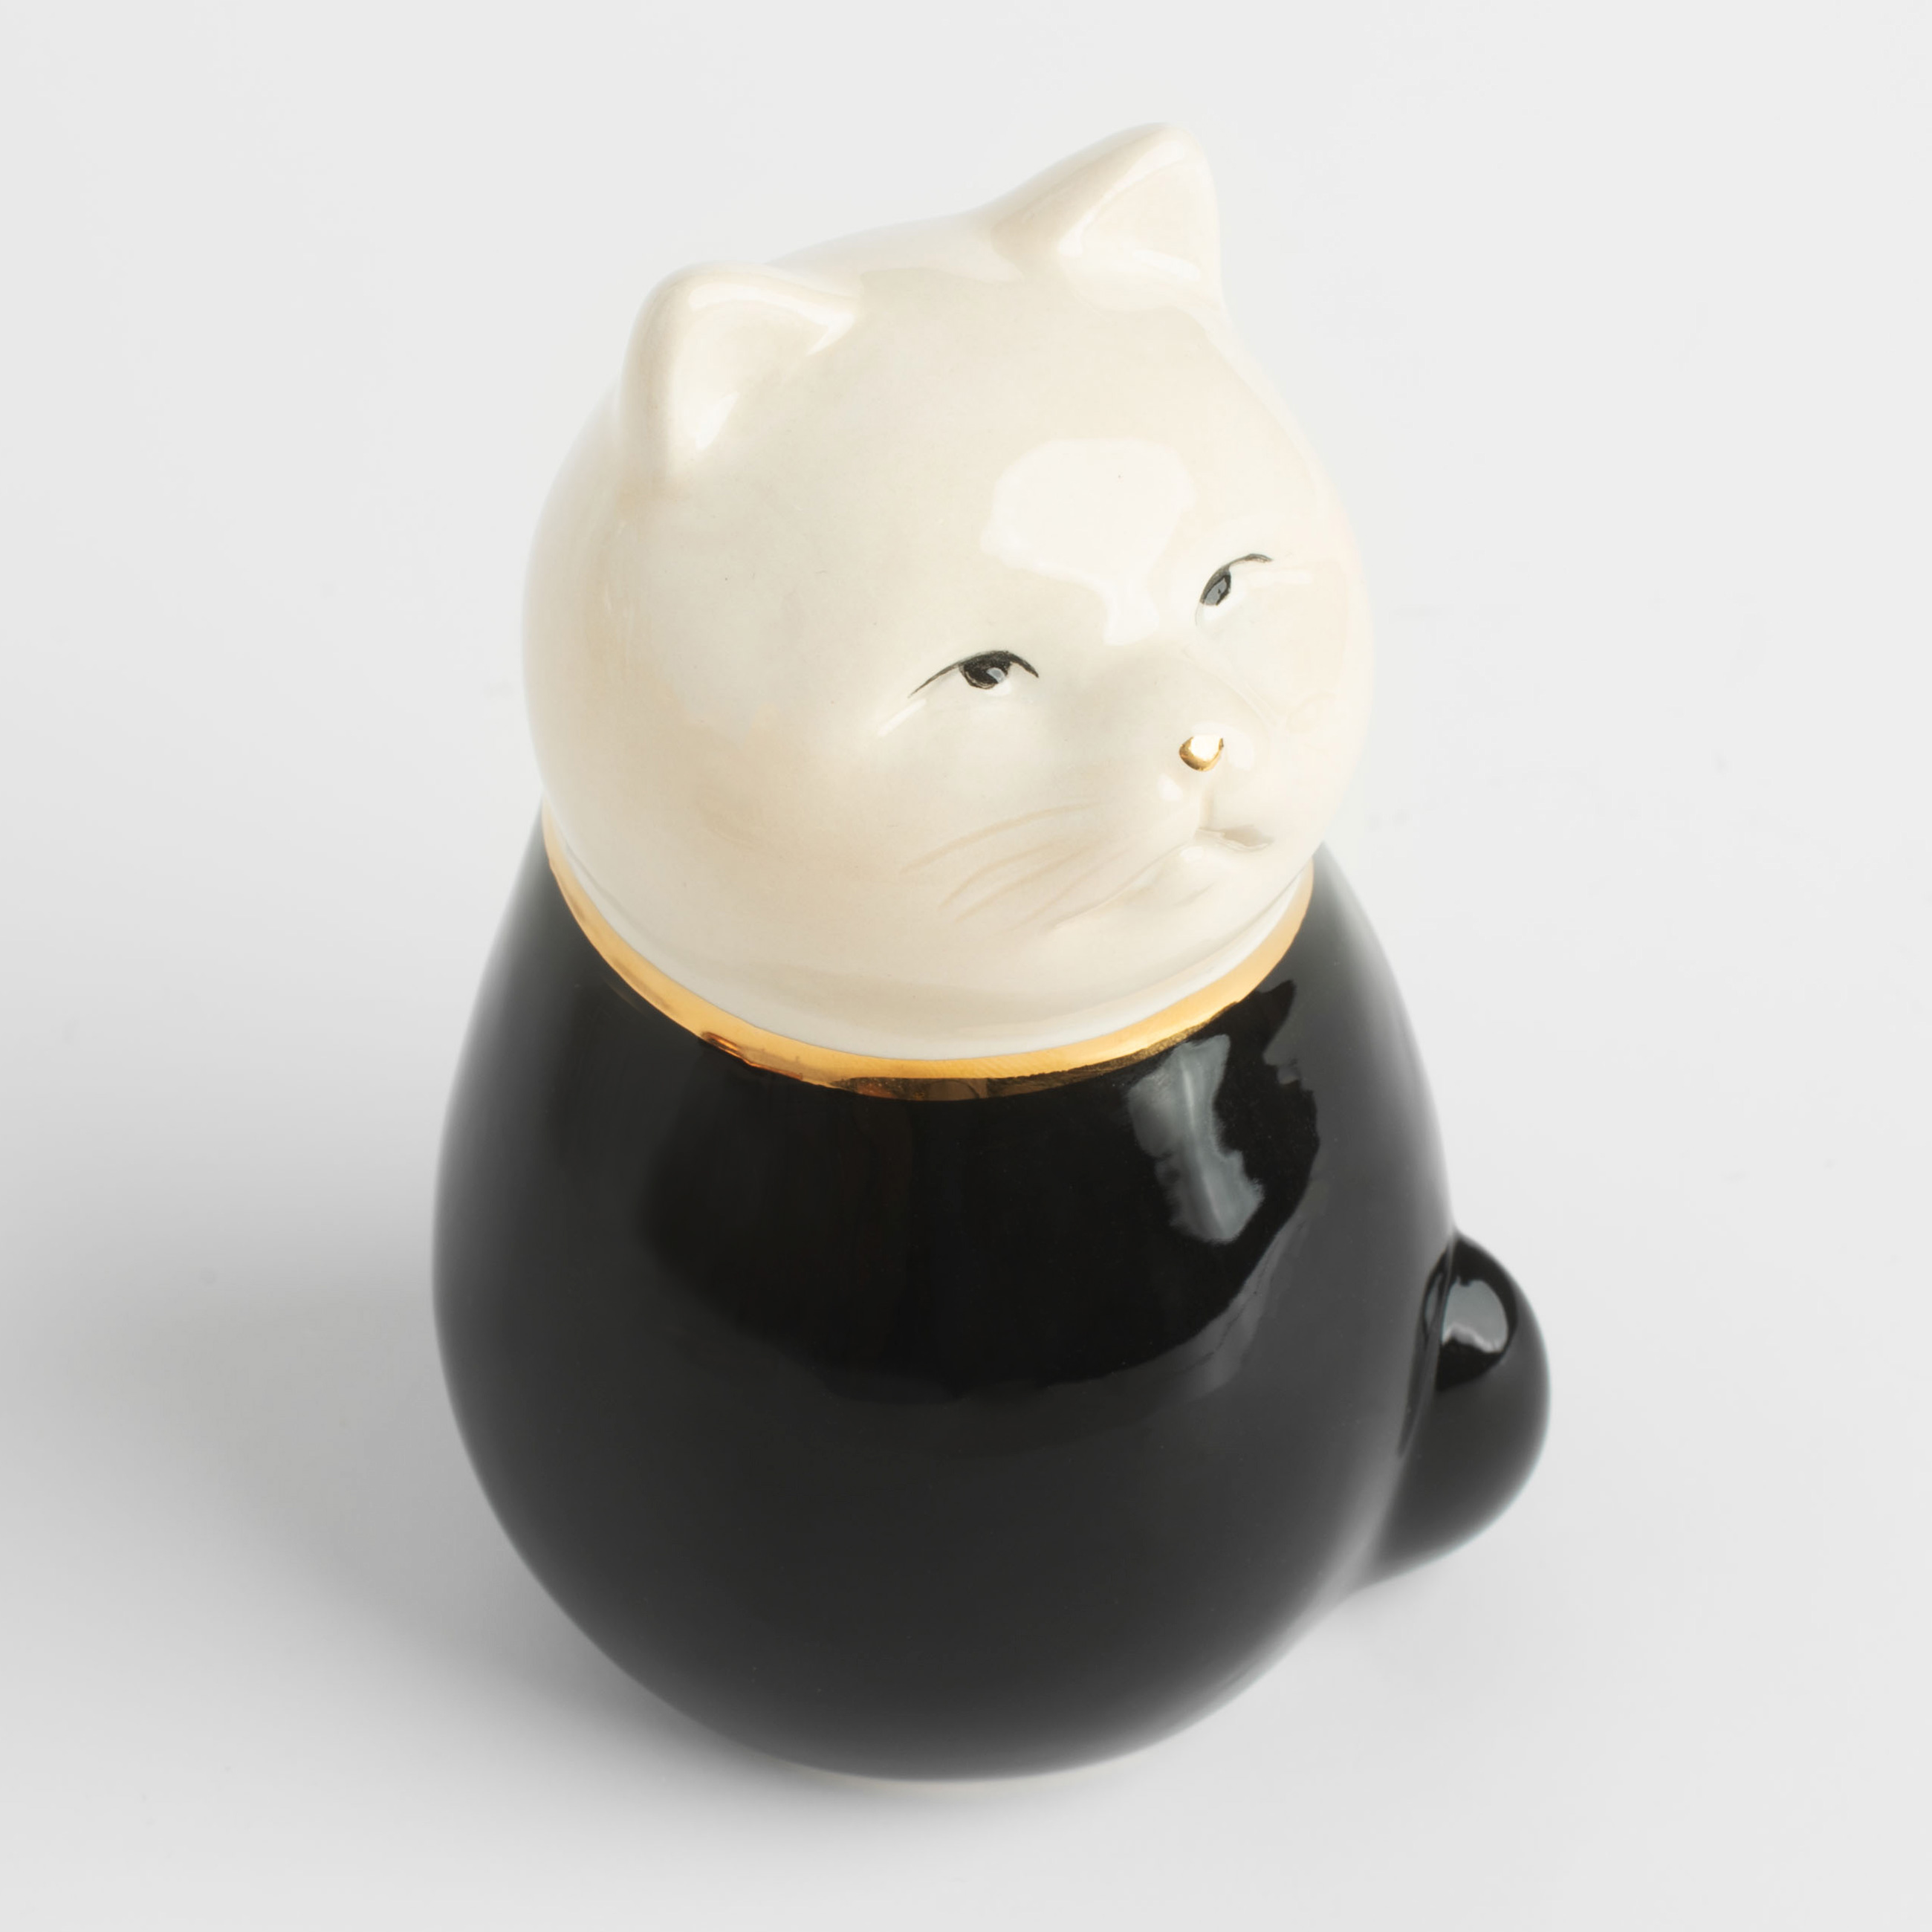 Figurine, 11 cm, ceramic, black and white, Cat, B&amp;W изображение № 4